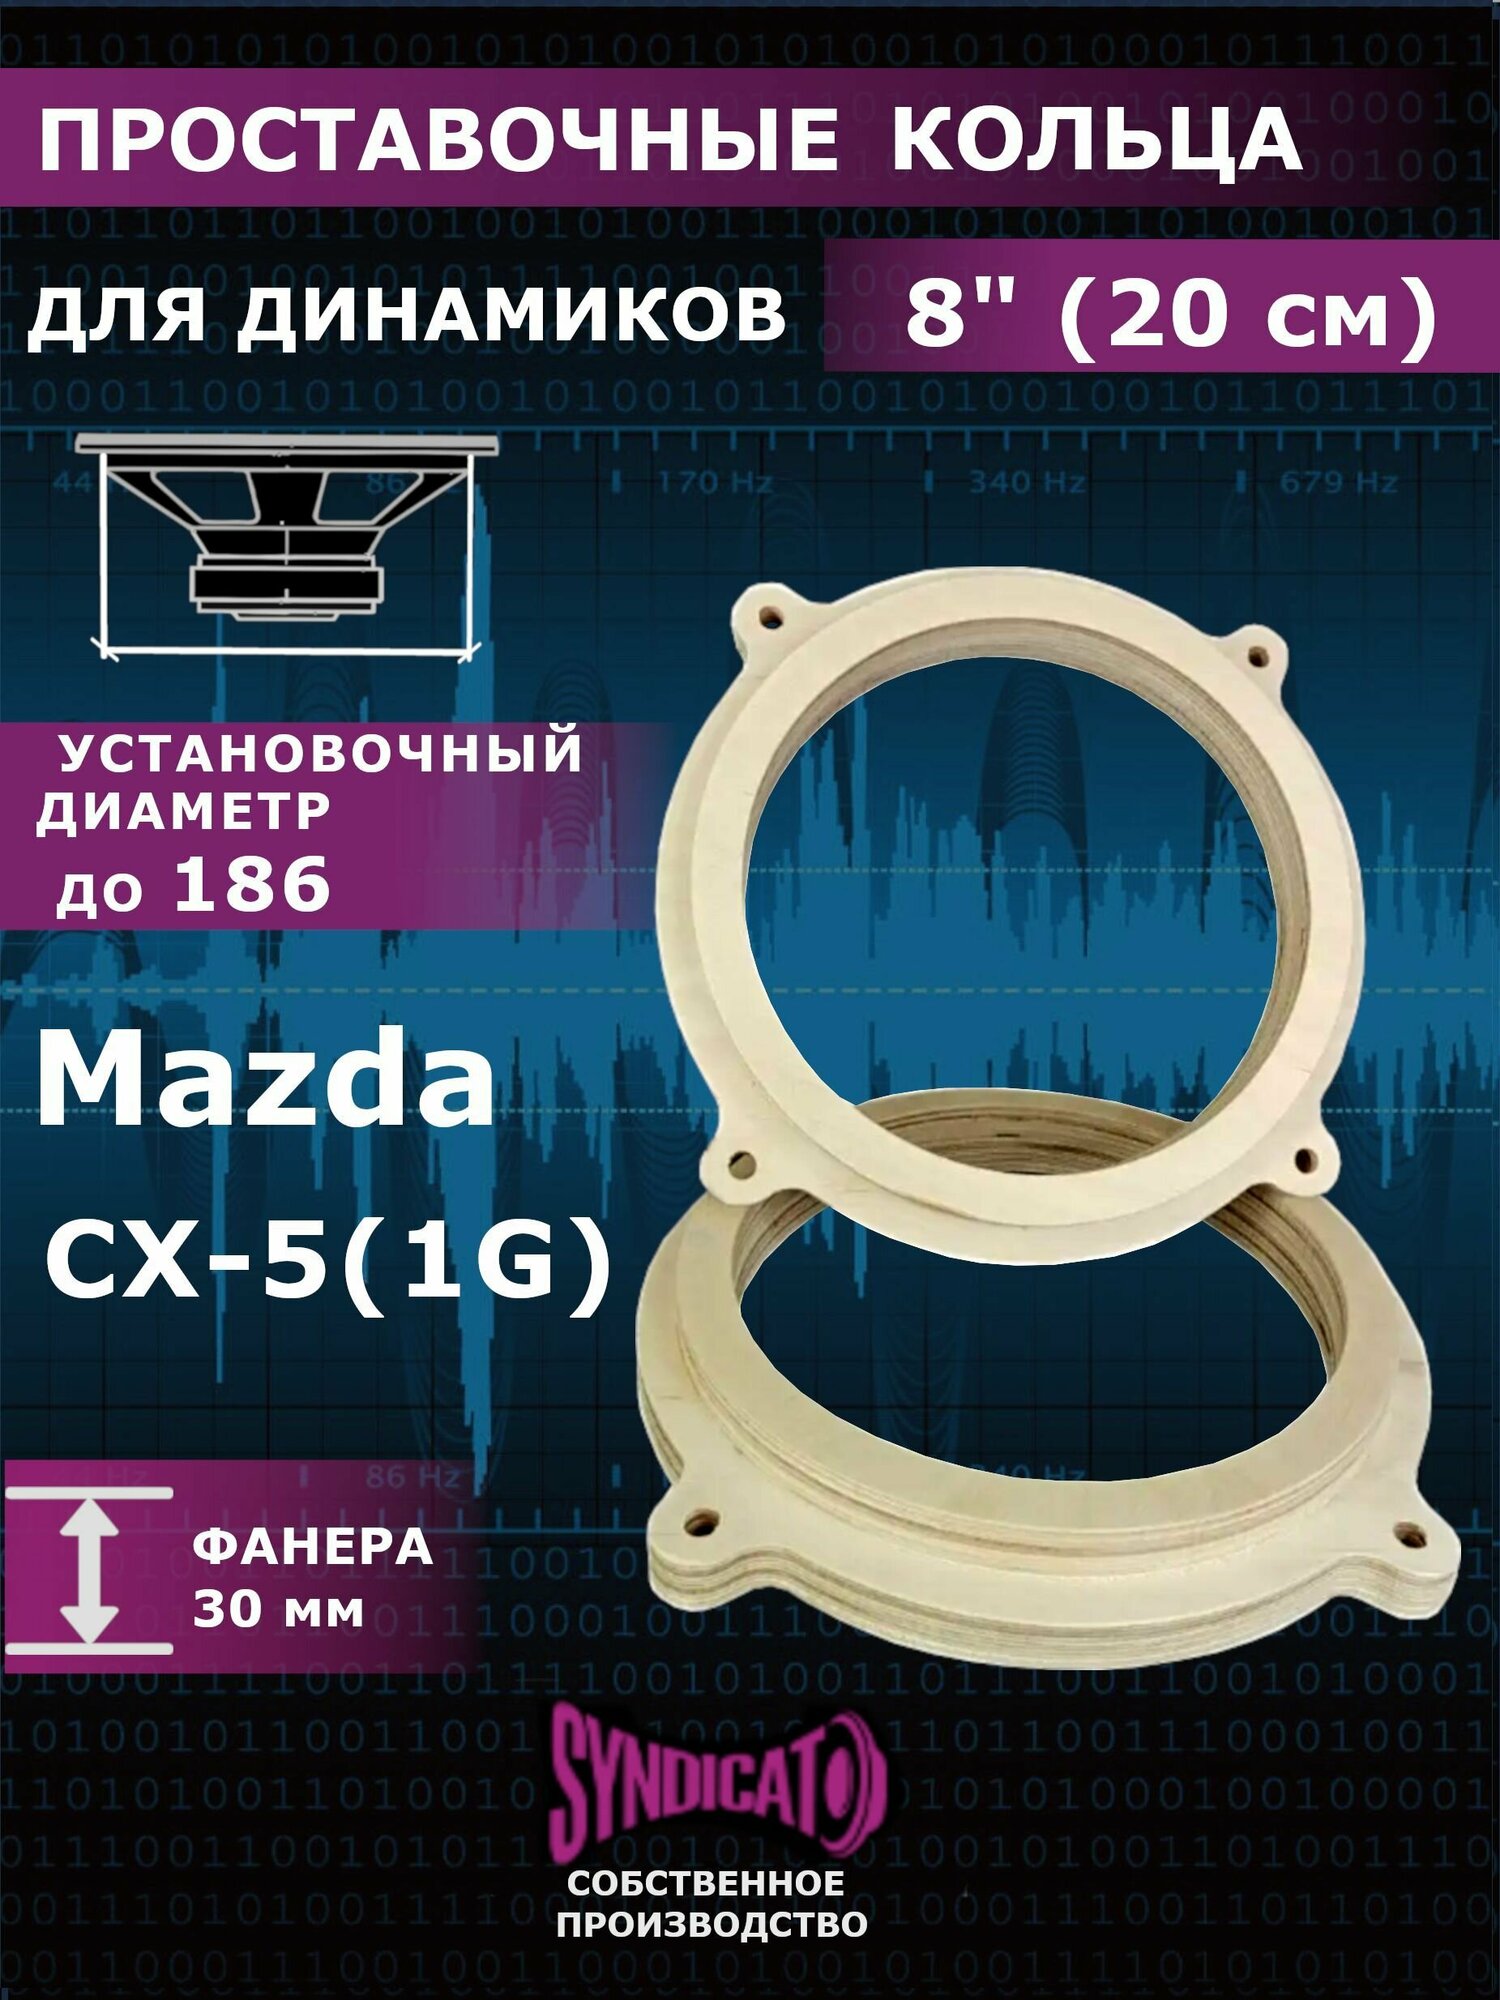 Проставочные кольца для динамиков колонок 20 MAZDA CX-5 1G